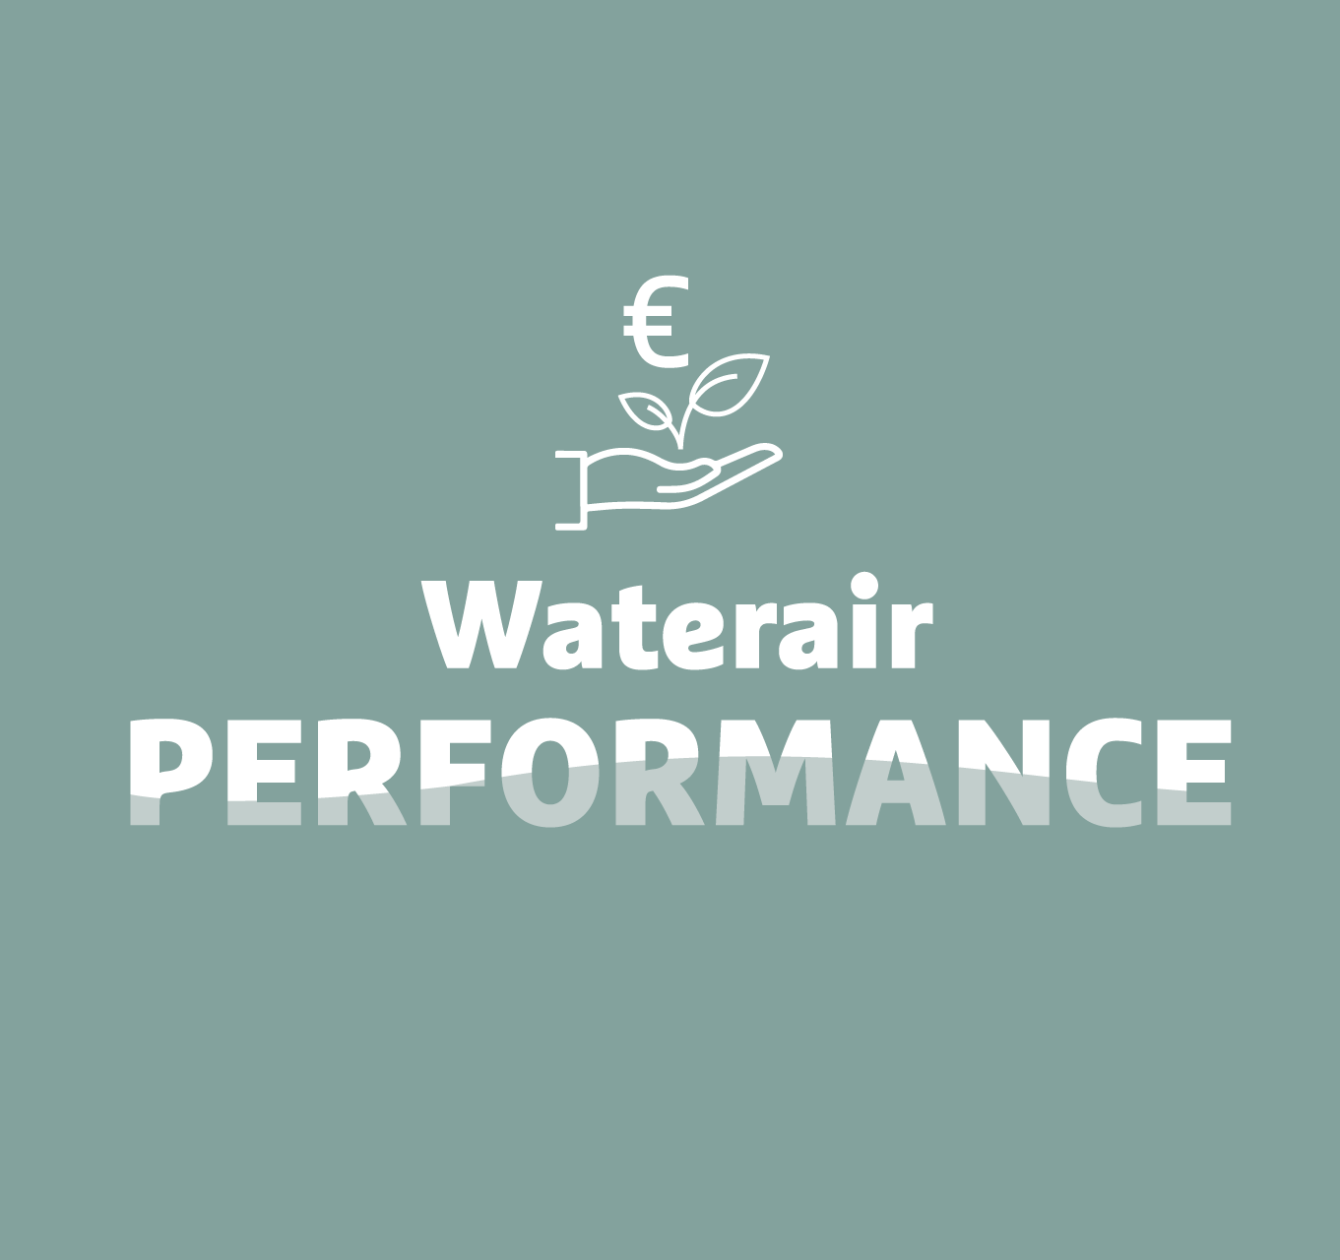 Waterair Performance: ekonomiczny i eko-odpowiedzialny basen